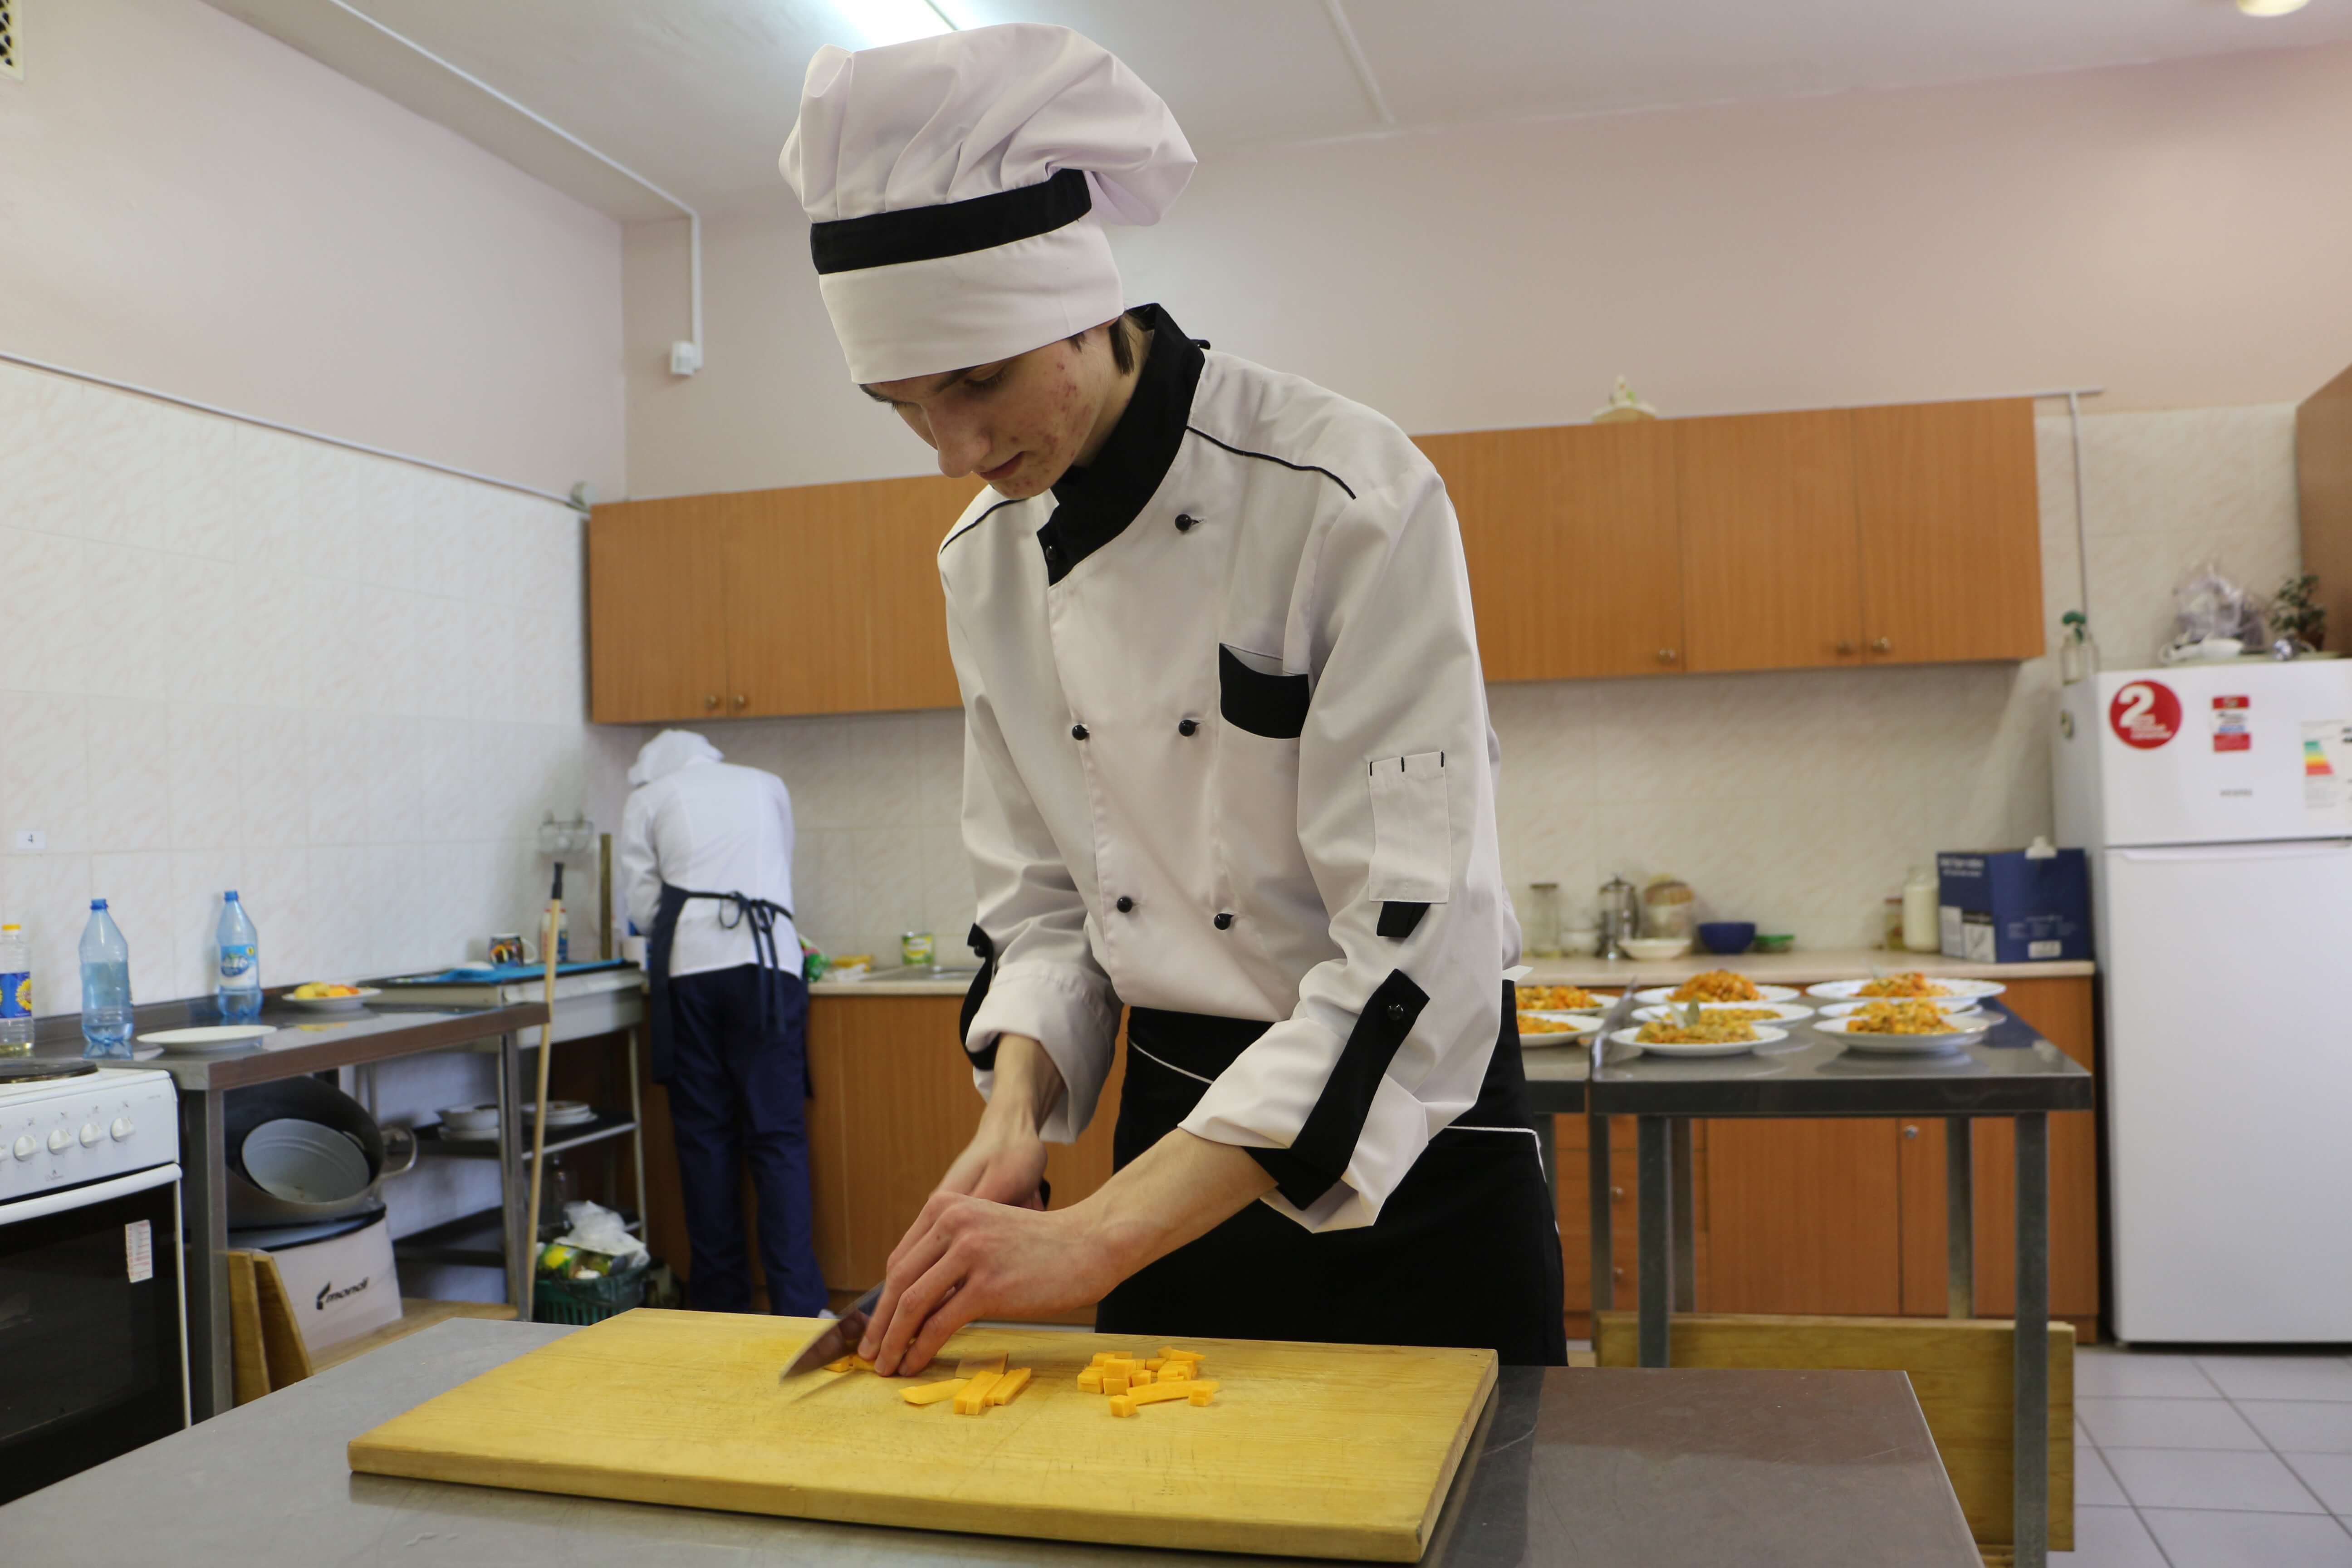 Реферат: Основы кулинарии в школе